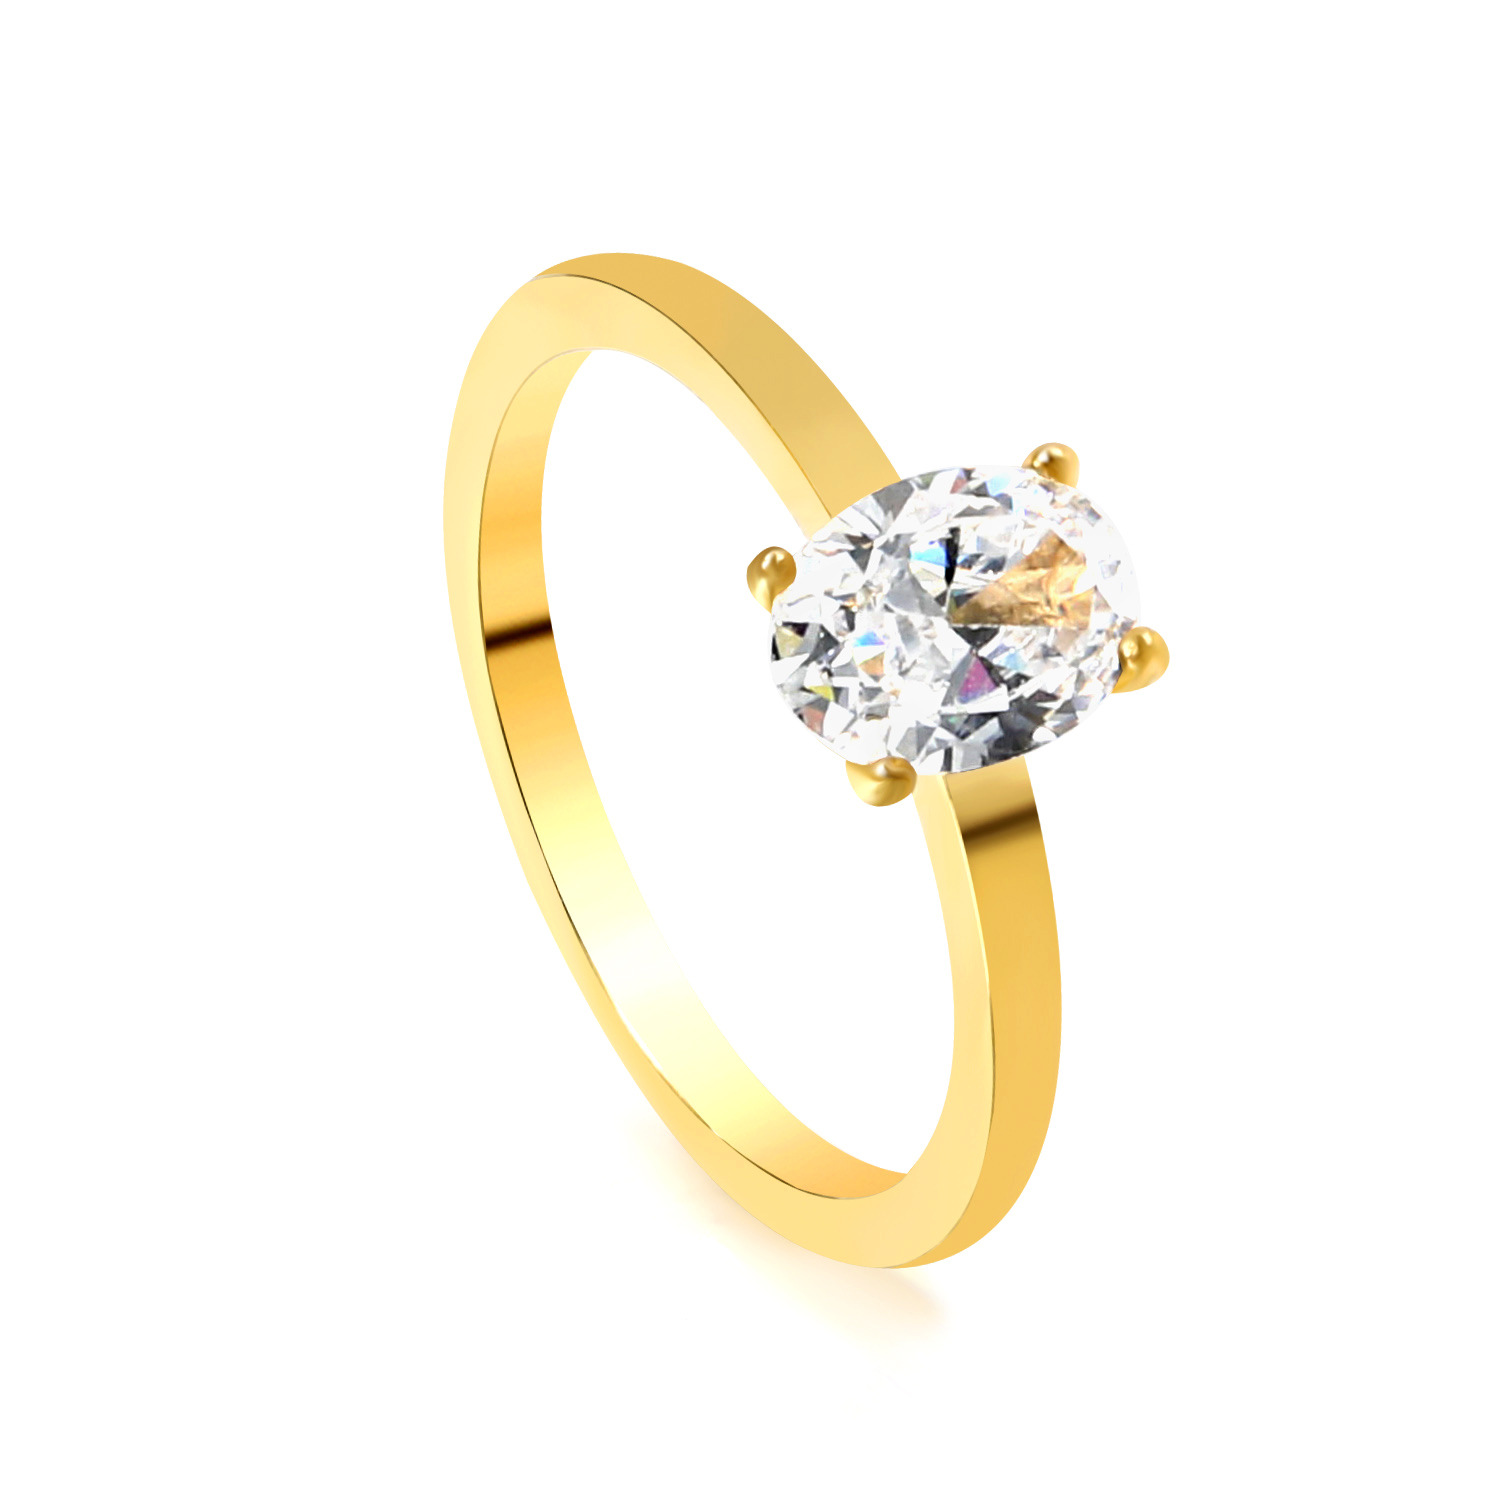 Gold and white diamond ring RI145306-9G